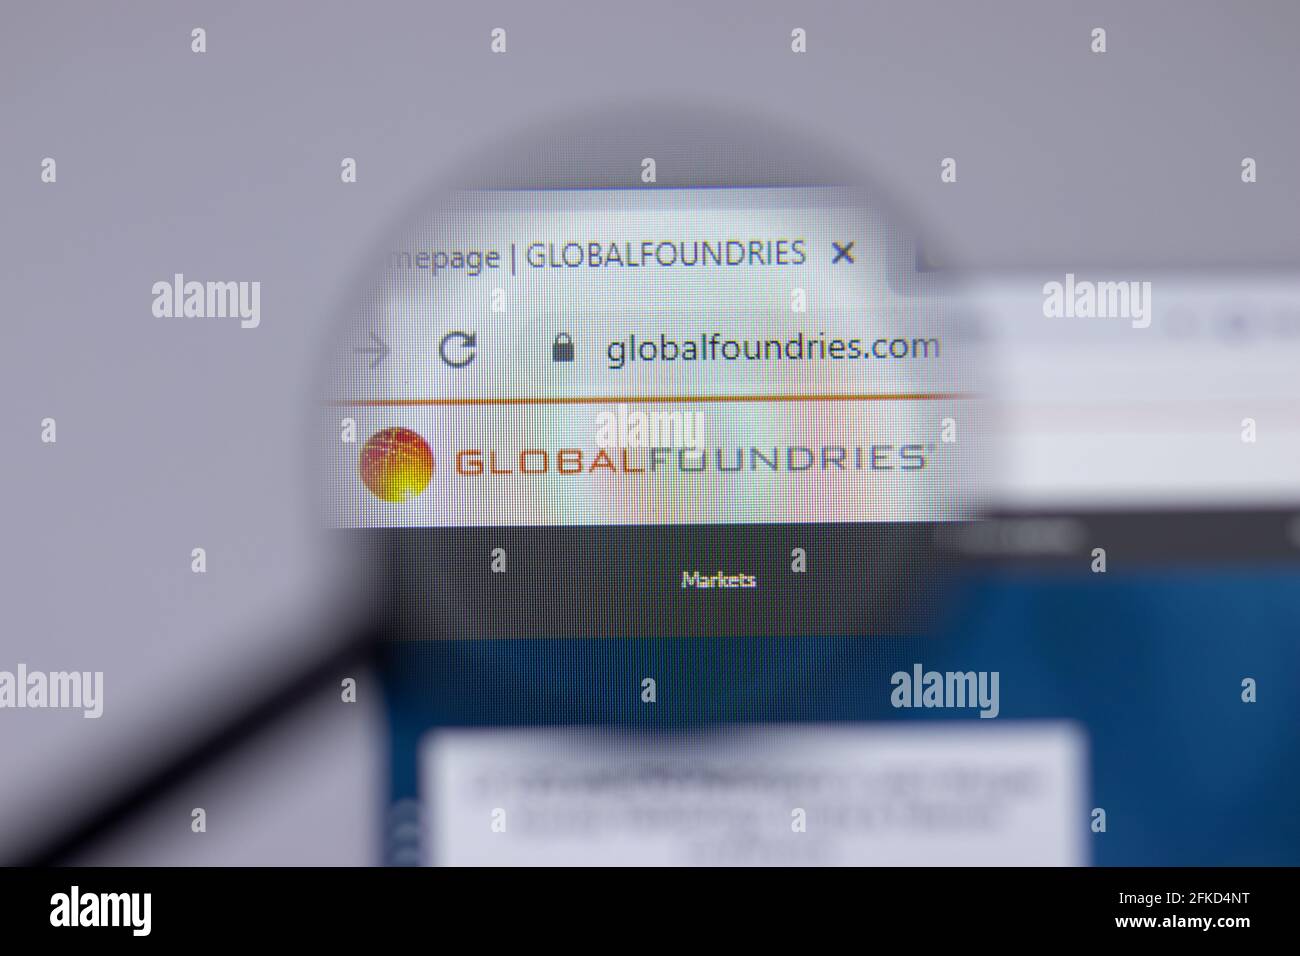 New York, USA - 26 Aprile 2021: Primo piano del logo aziendale Global Foundries sulla pagina del sito, Editoriale illustrativo Foto Stock